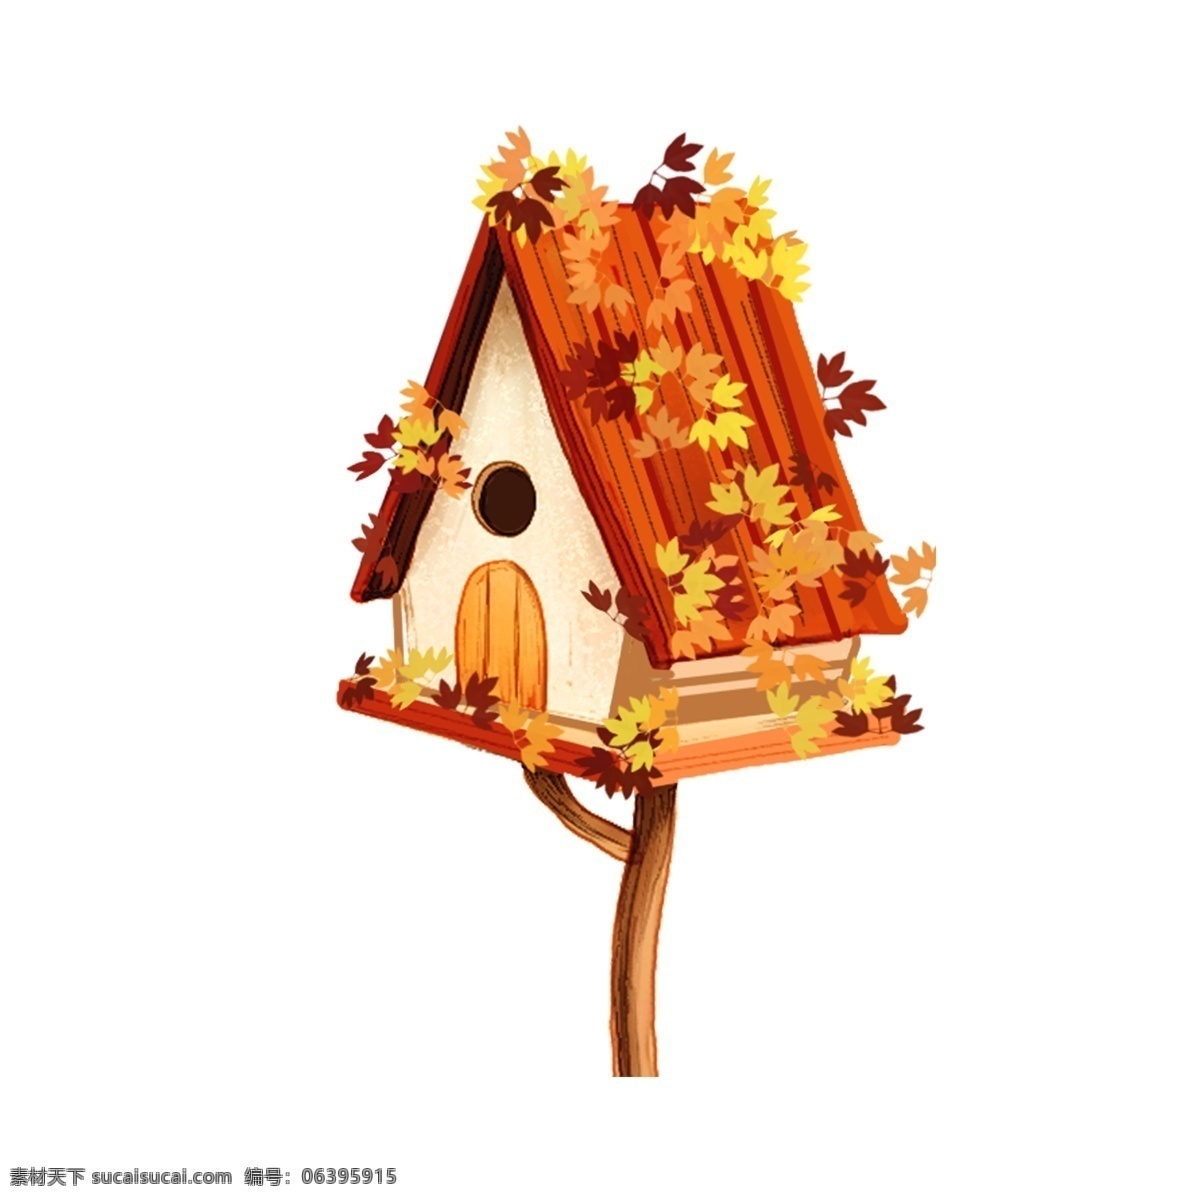 卡通 手绘 秋季 房屋 元素 建筑 可爱 png元素 免抠元素 秋叶